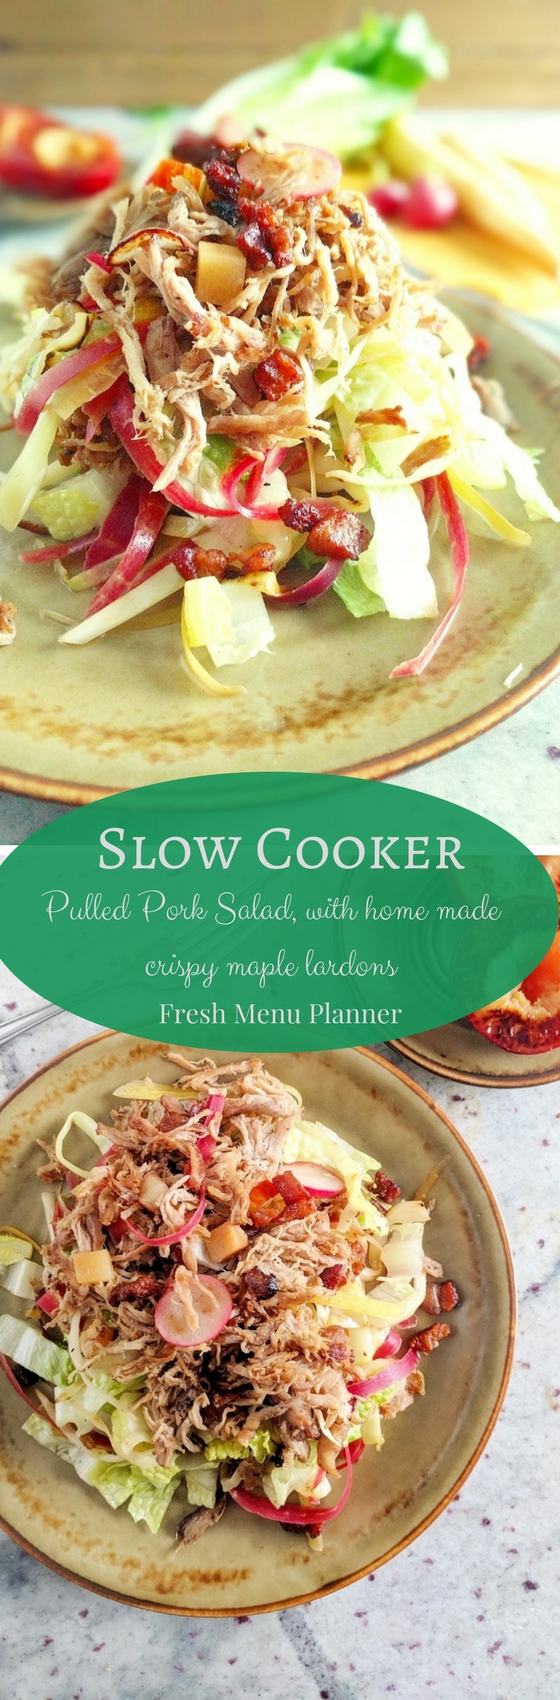 Slow Cooker Pulled Pork Salad